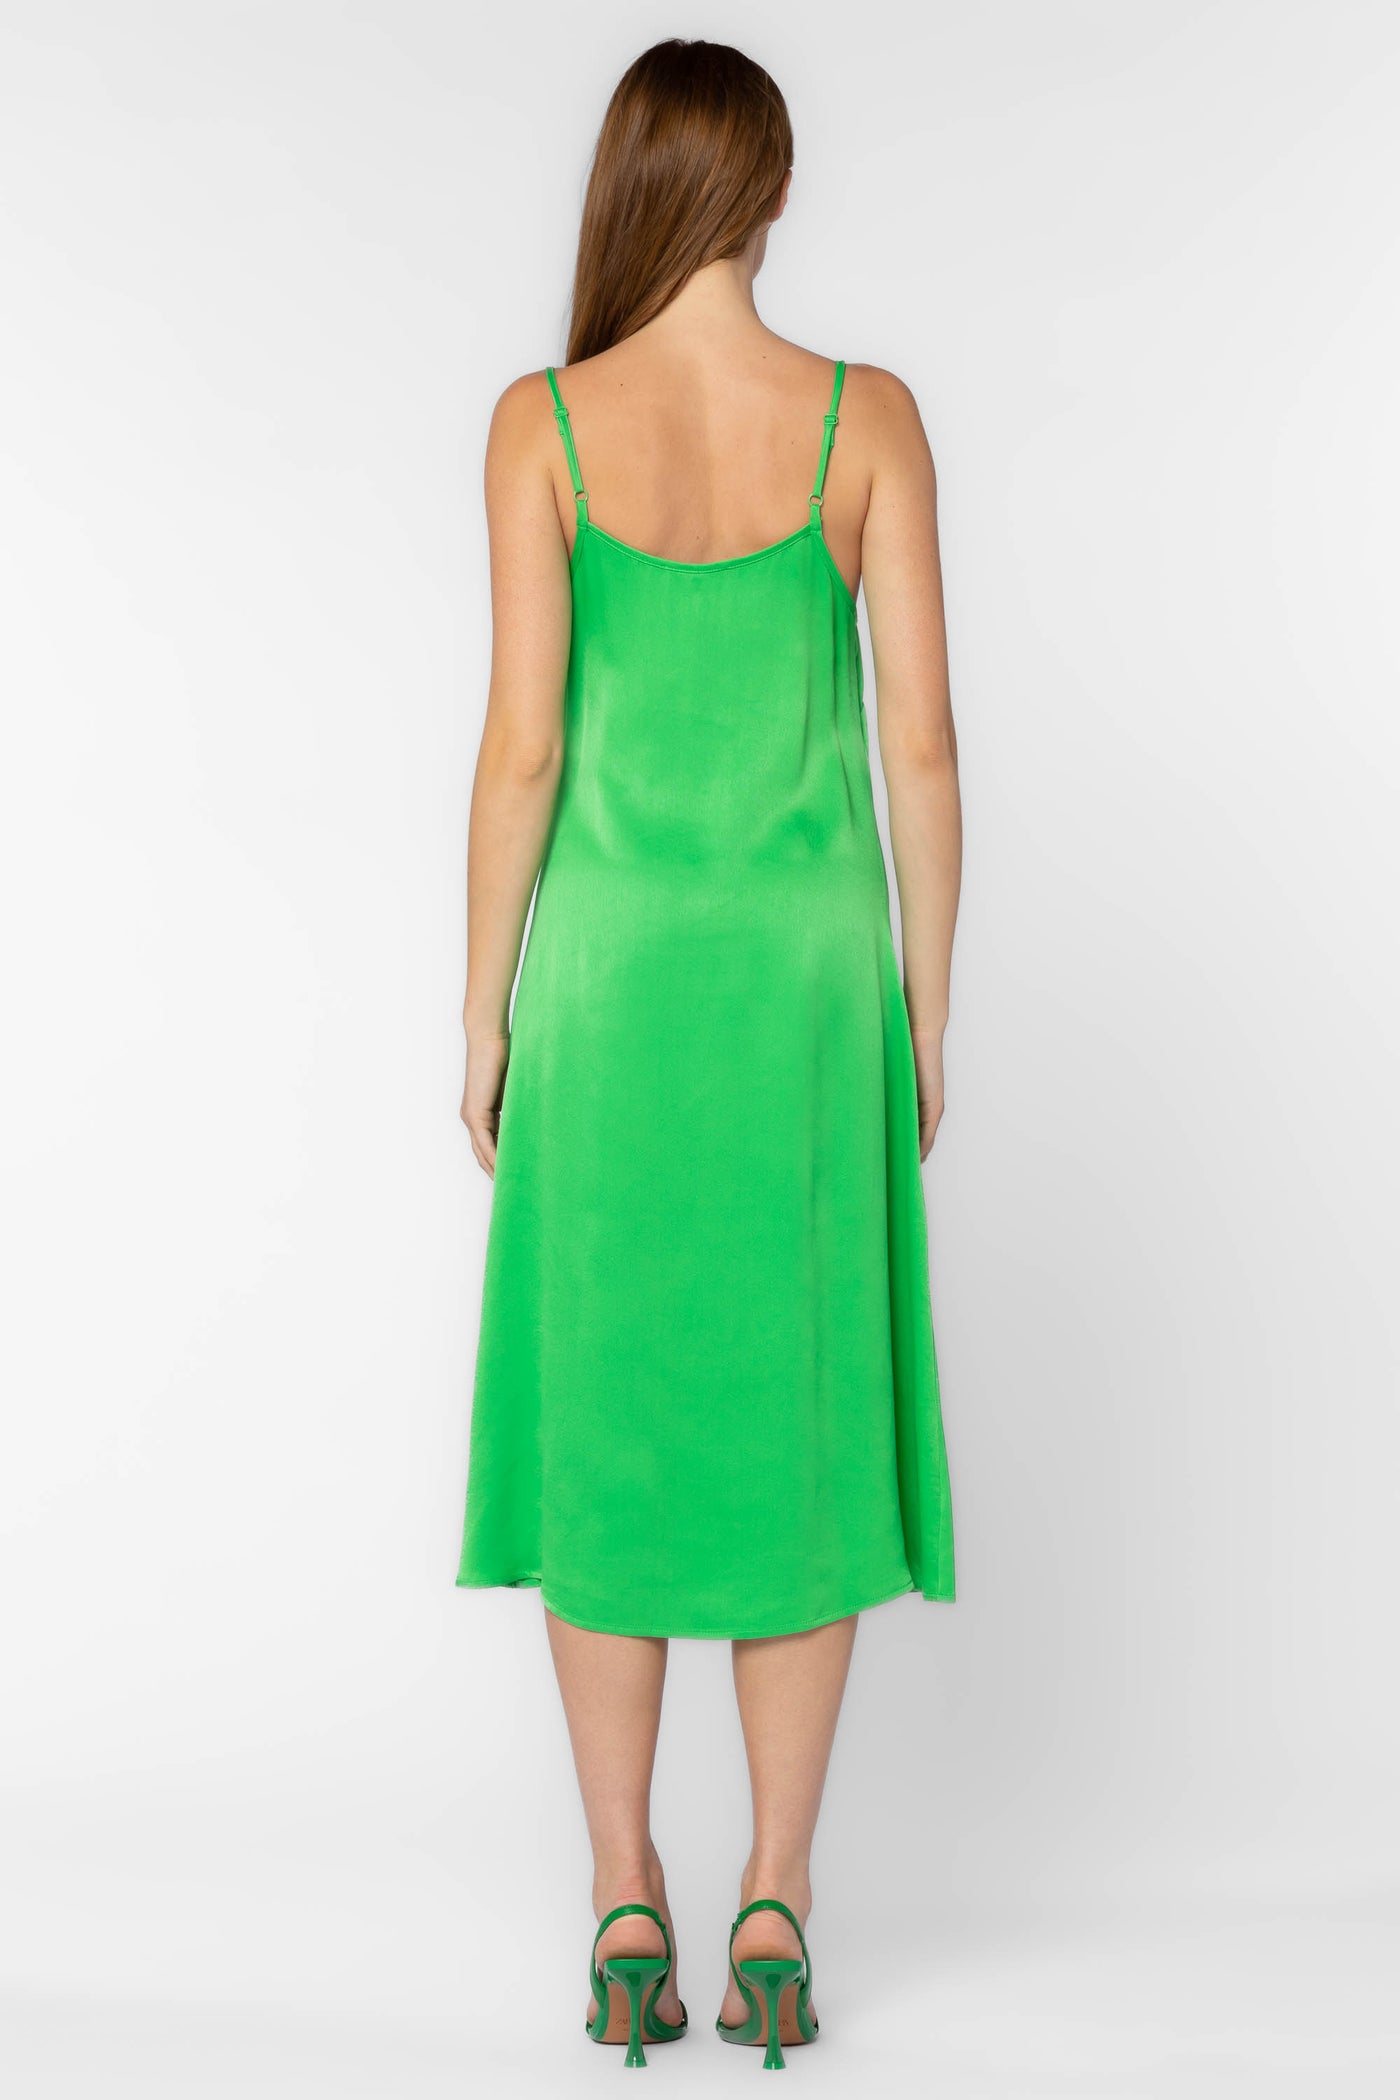 Dreya Green Dress - Dresses - Velvet Heart Clothing